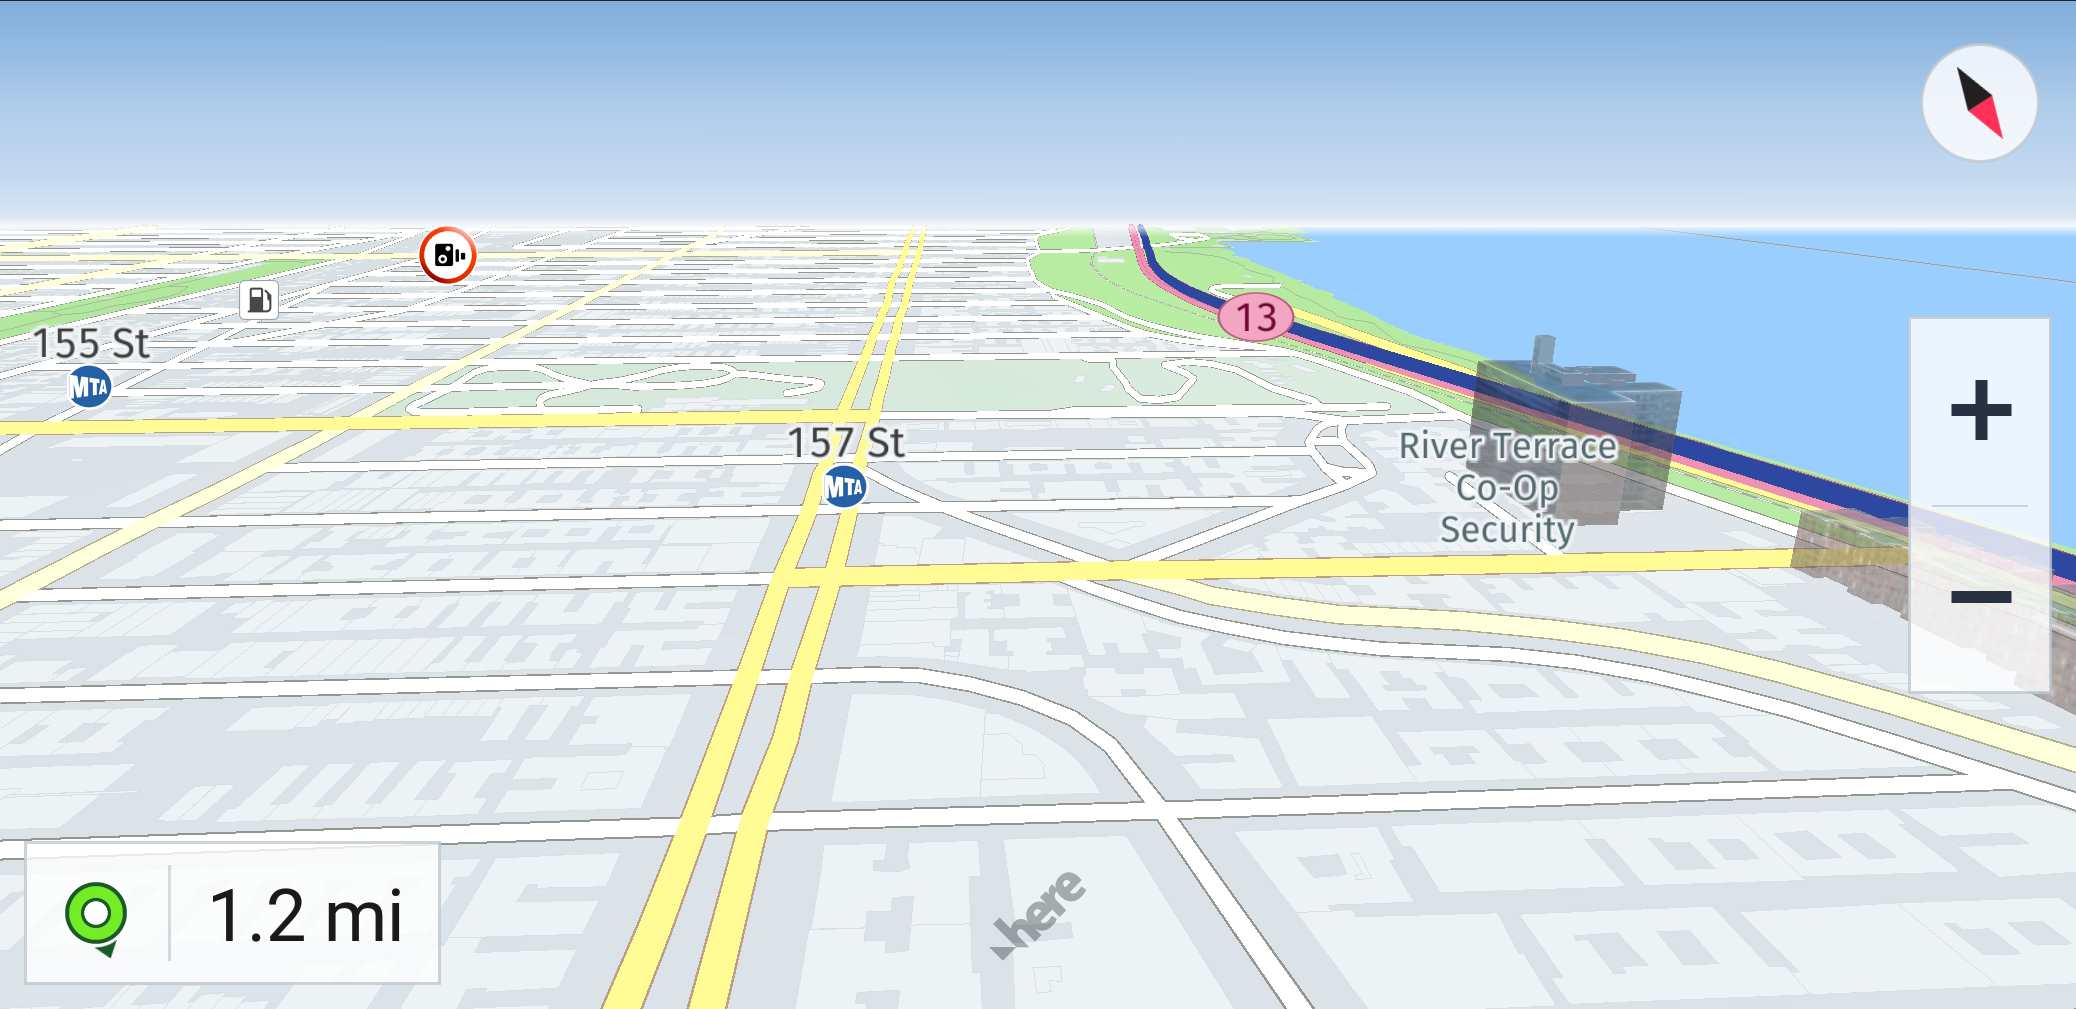 AQUI Mapa do WeGo com instruções de direção na cidade de Nova York.